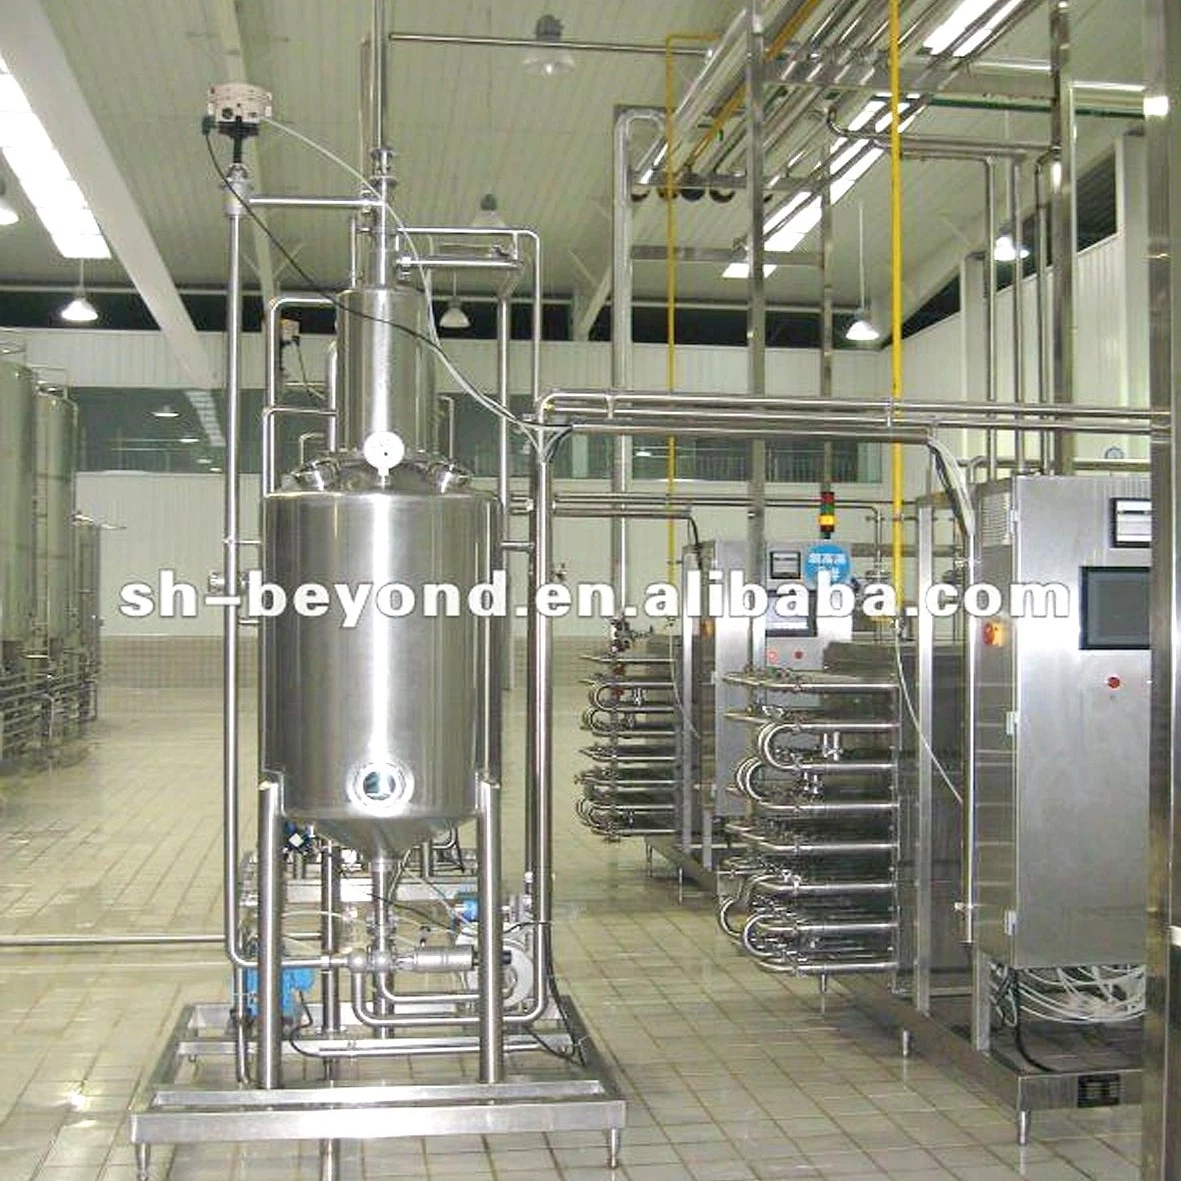 Producto de alta calidad bomba y bomba de agua caliente la leche de jugo de la máquina de esterilización